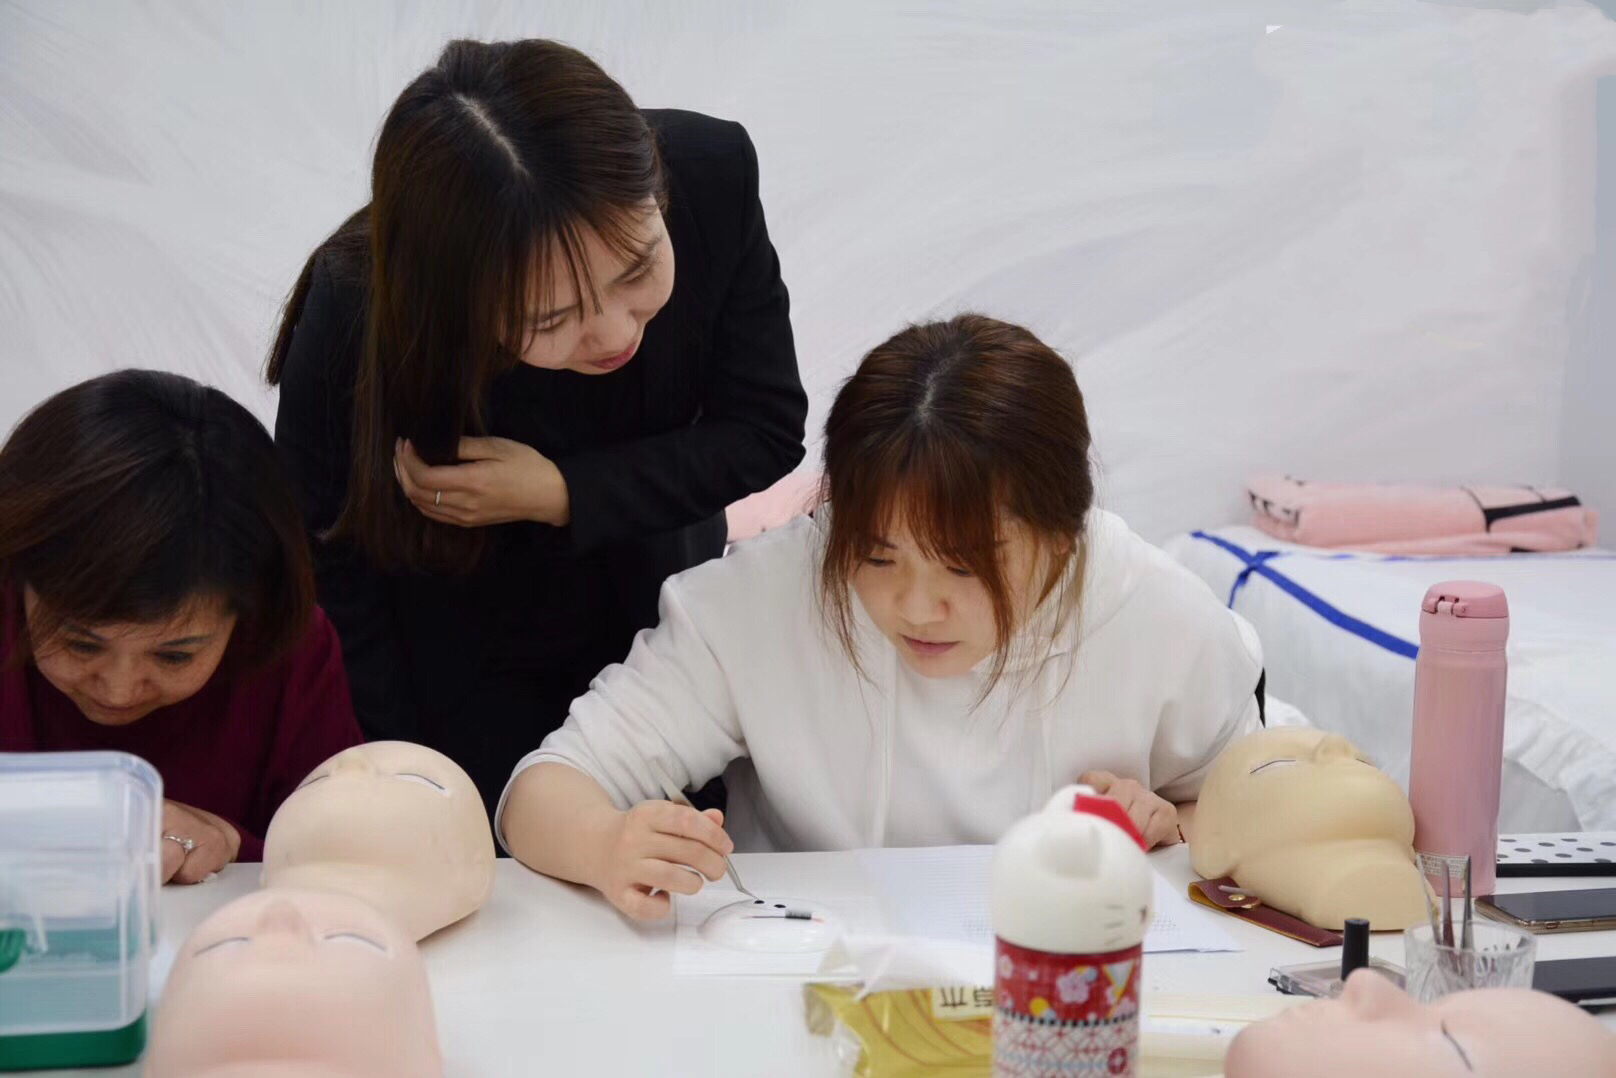 上海皮肤管理培训孕睫术培训课程